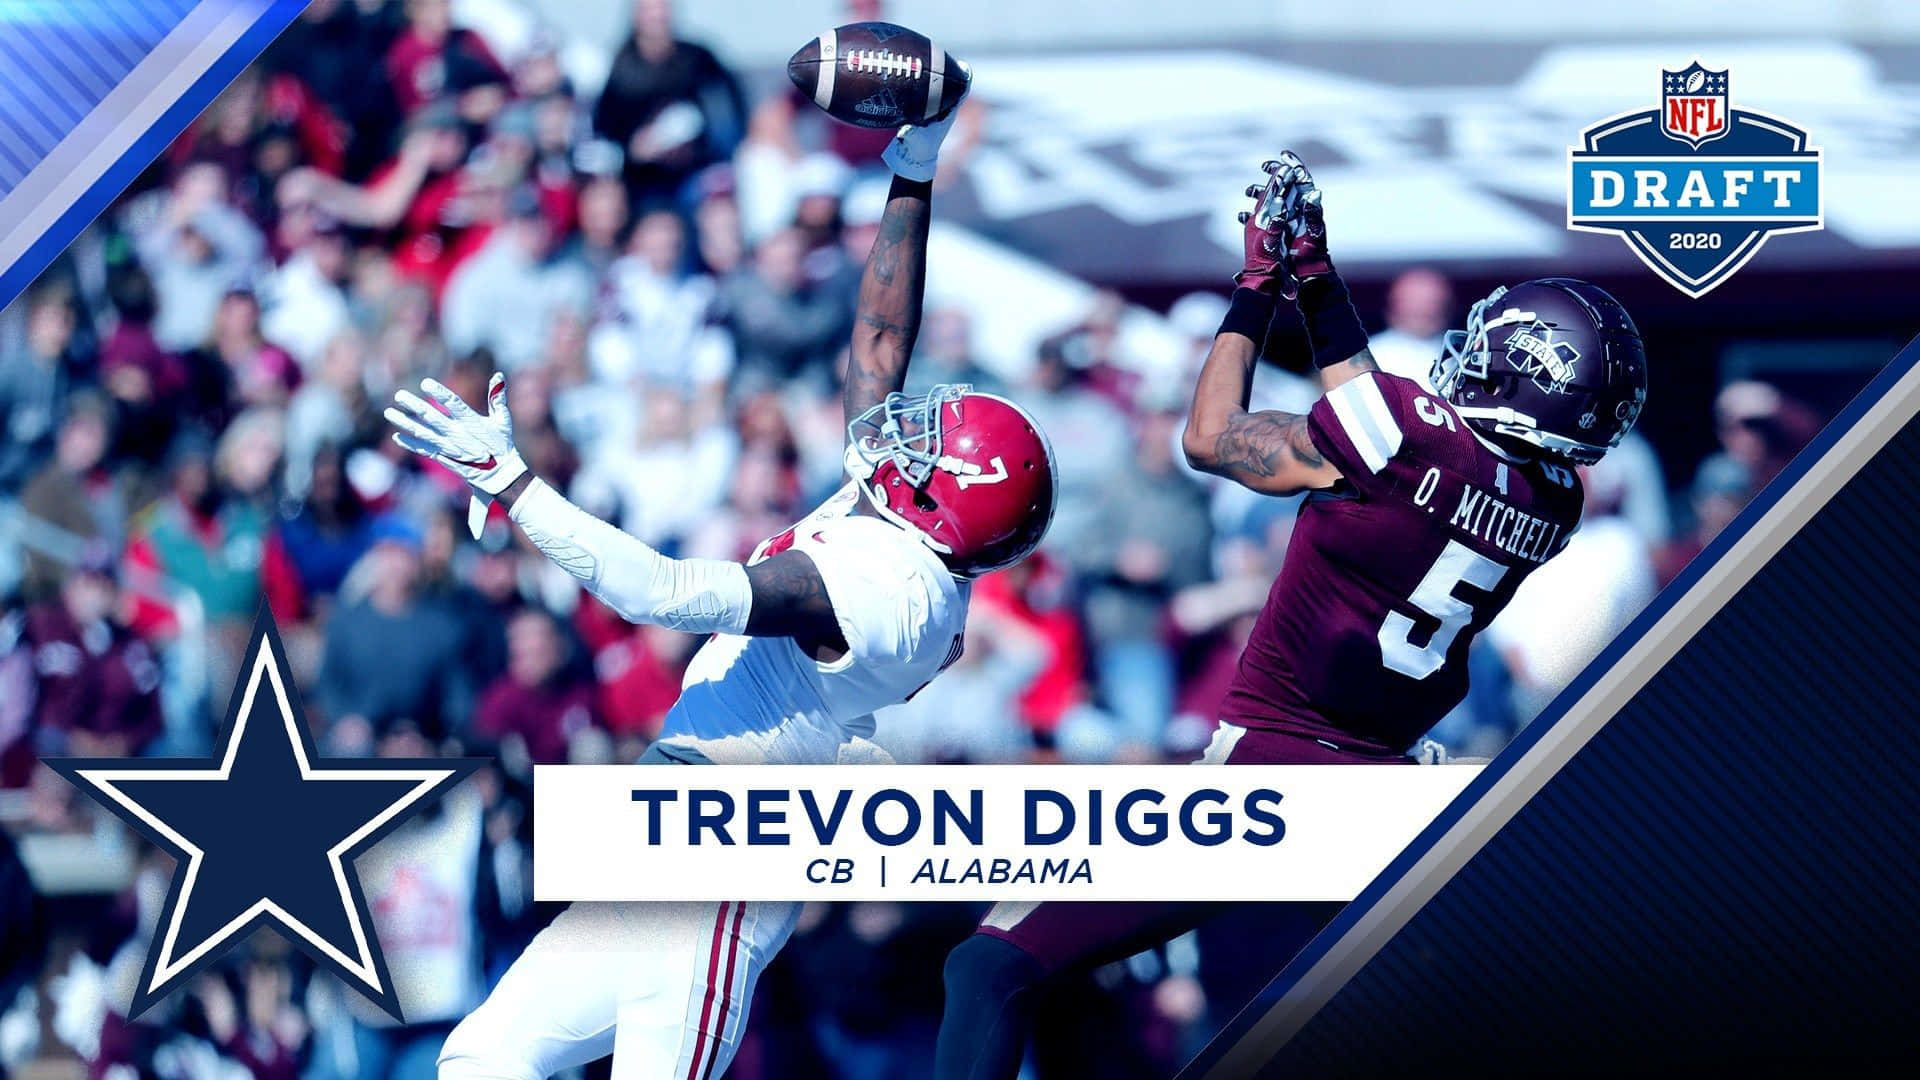 Download Trevon Diggs  Dallas Cowboys cornerback Wallpaper  Wallpaperscom